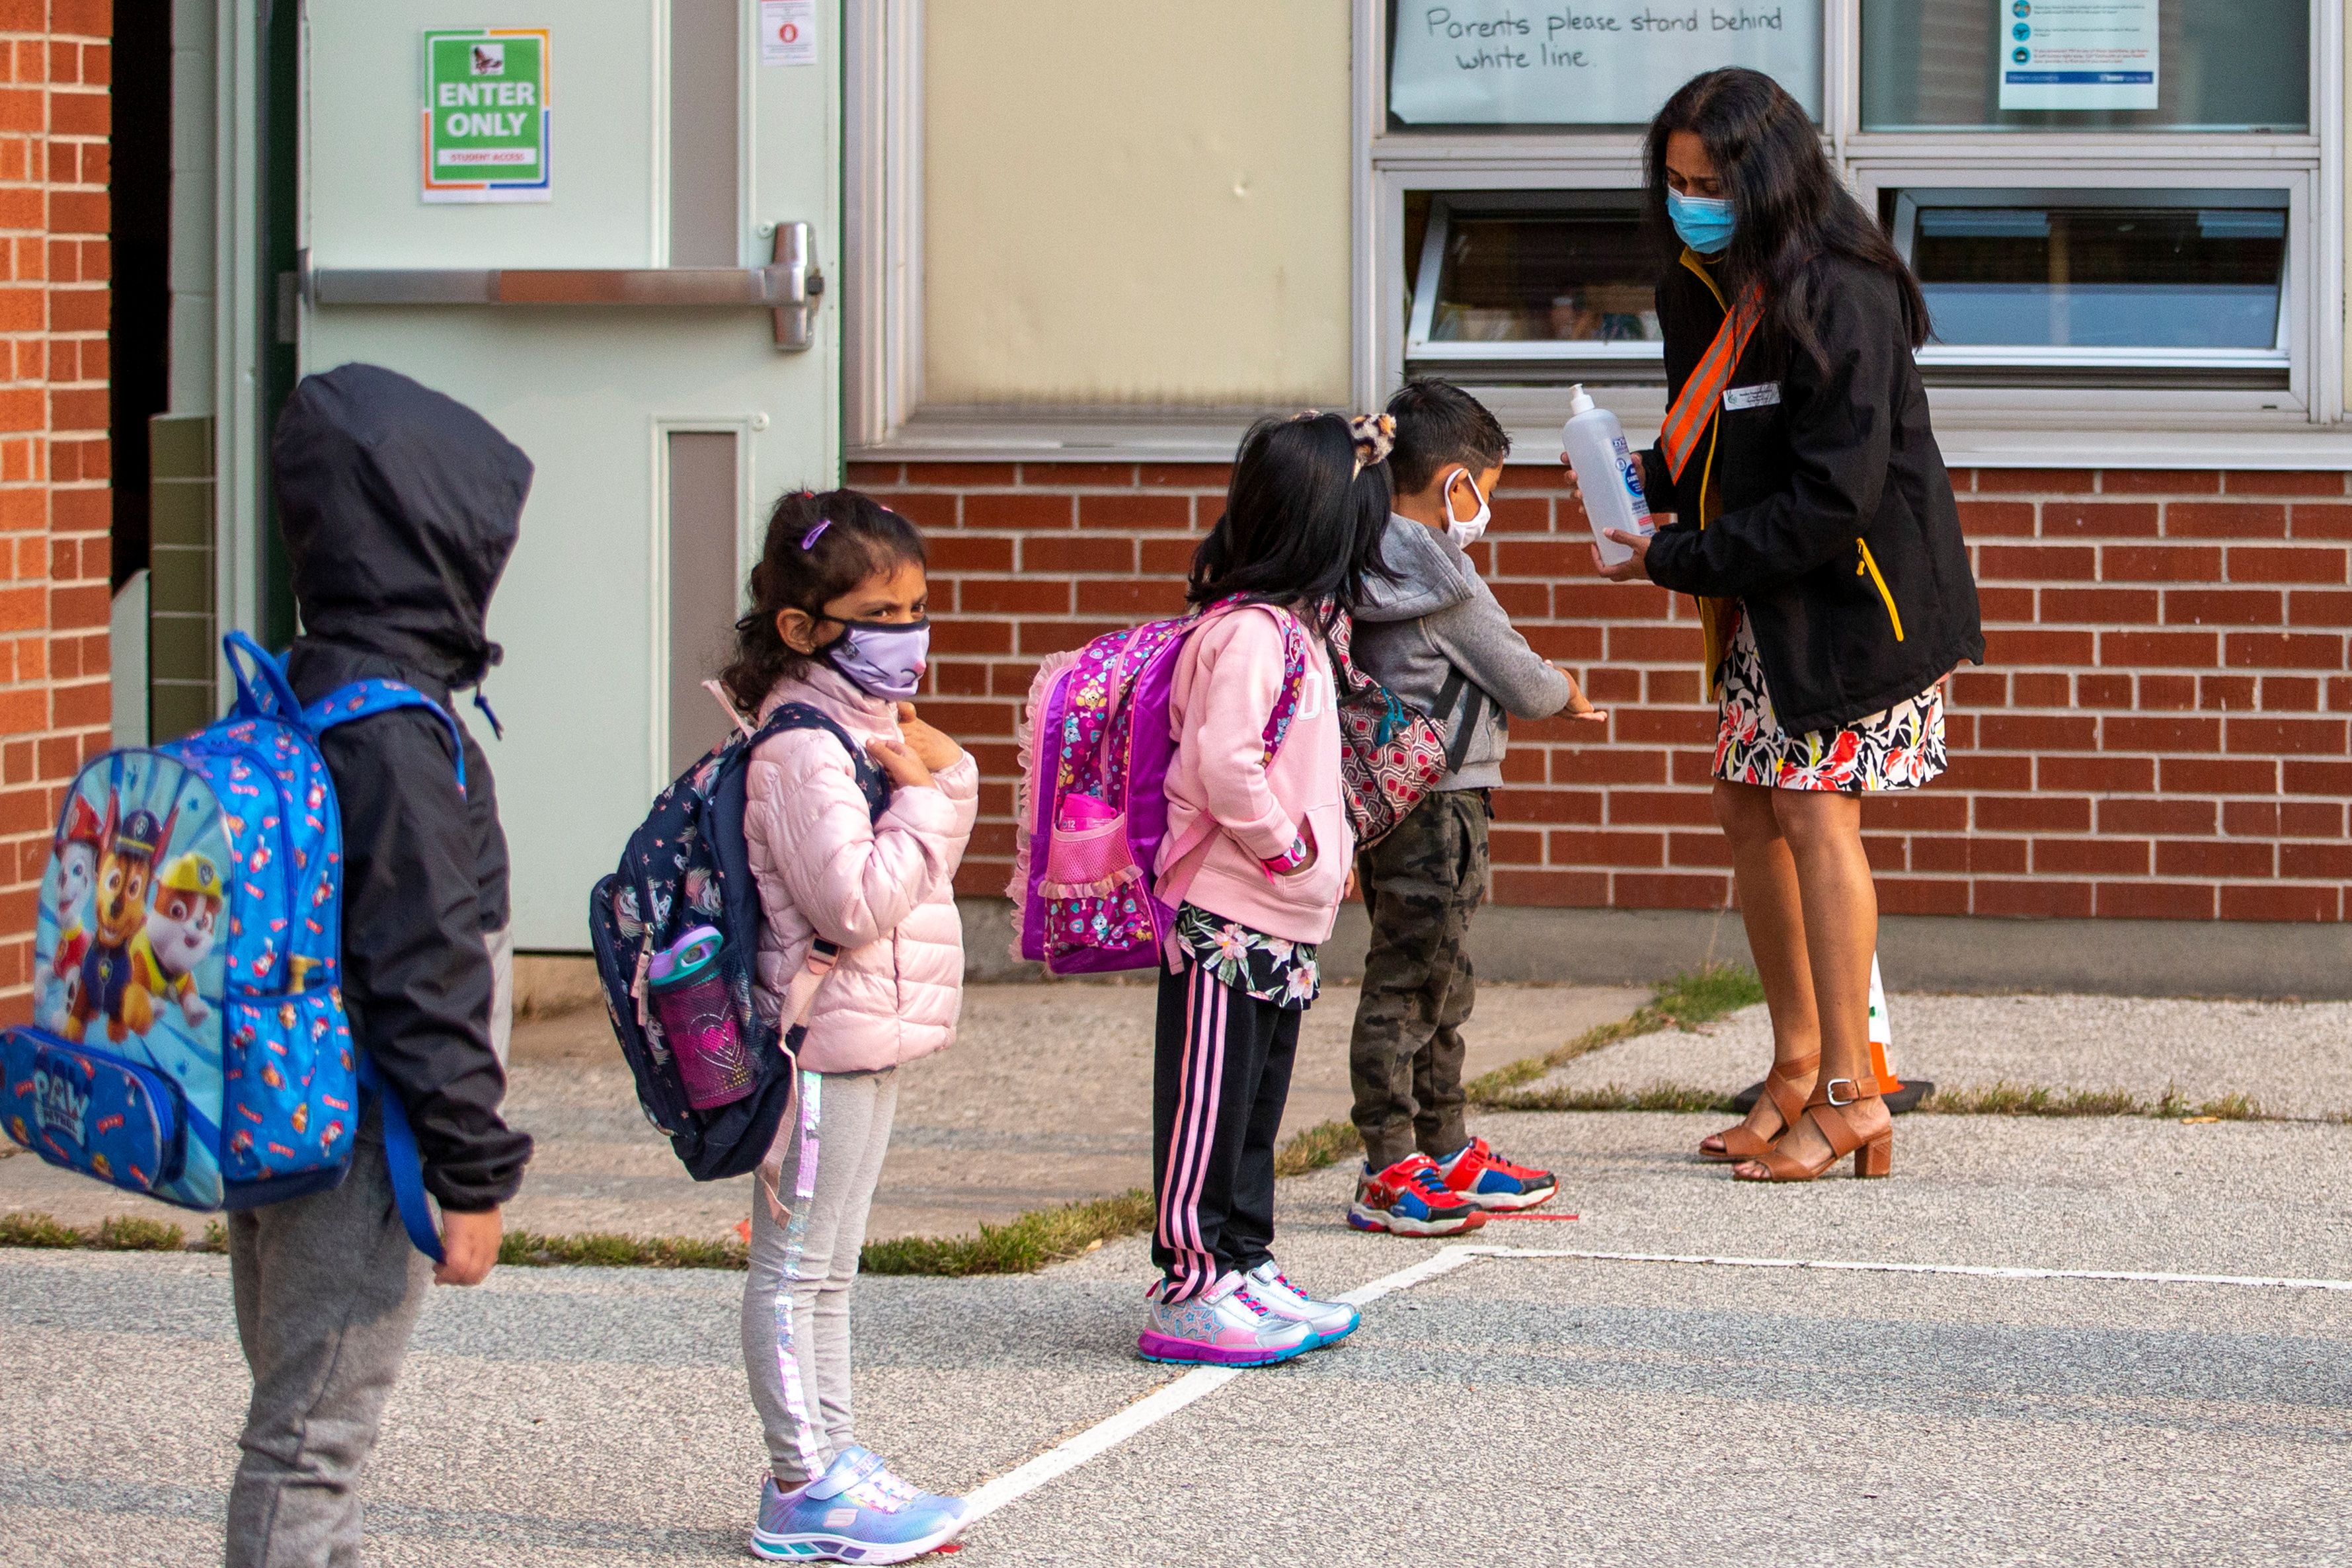 Estudiantes en su primer día de clases tras la suspensión por la pandemia del coronavirus, en Toronto, Ontario, Canadá. Septiembre de 2020. REUTERS/Carlos Osorio